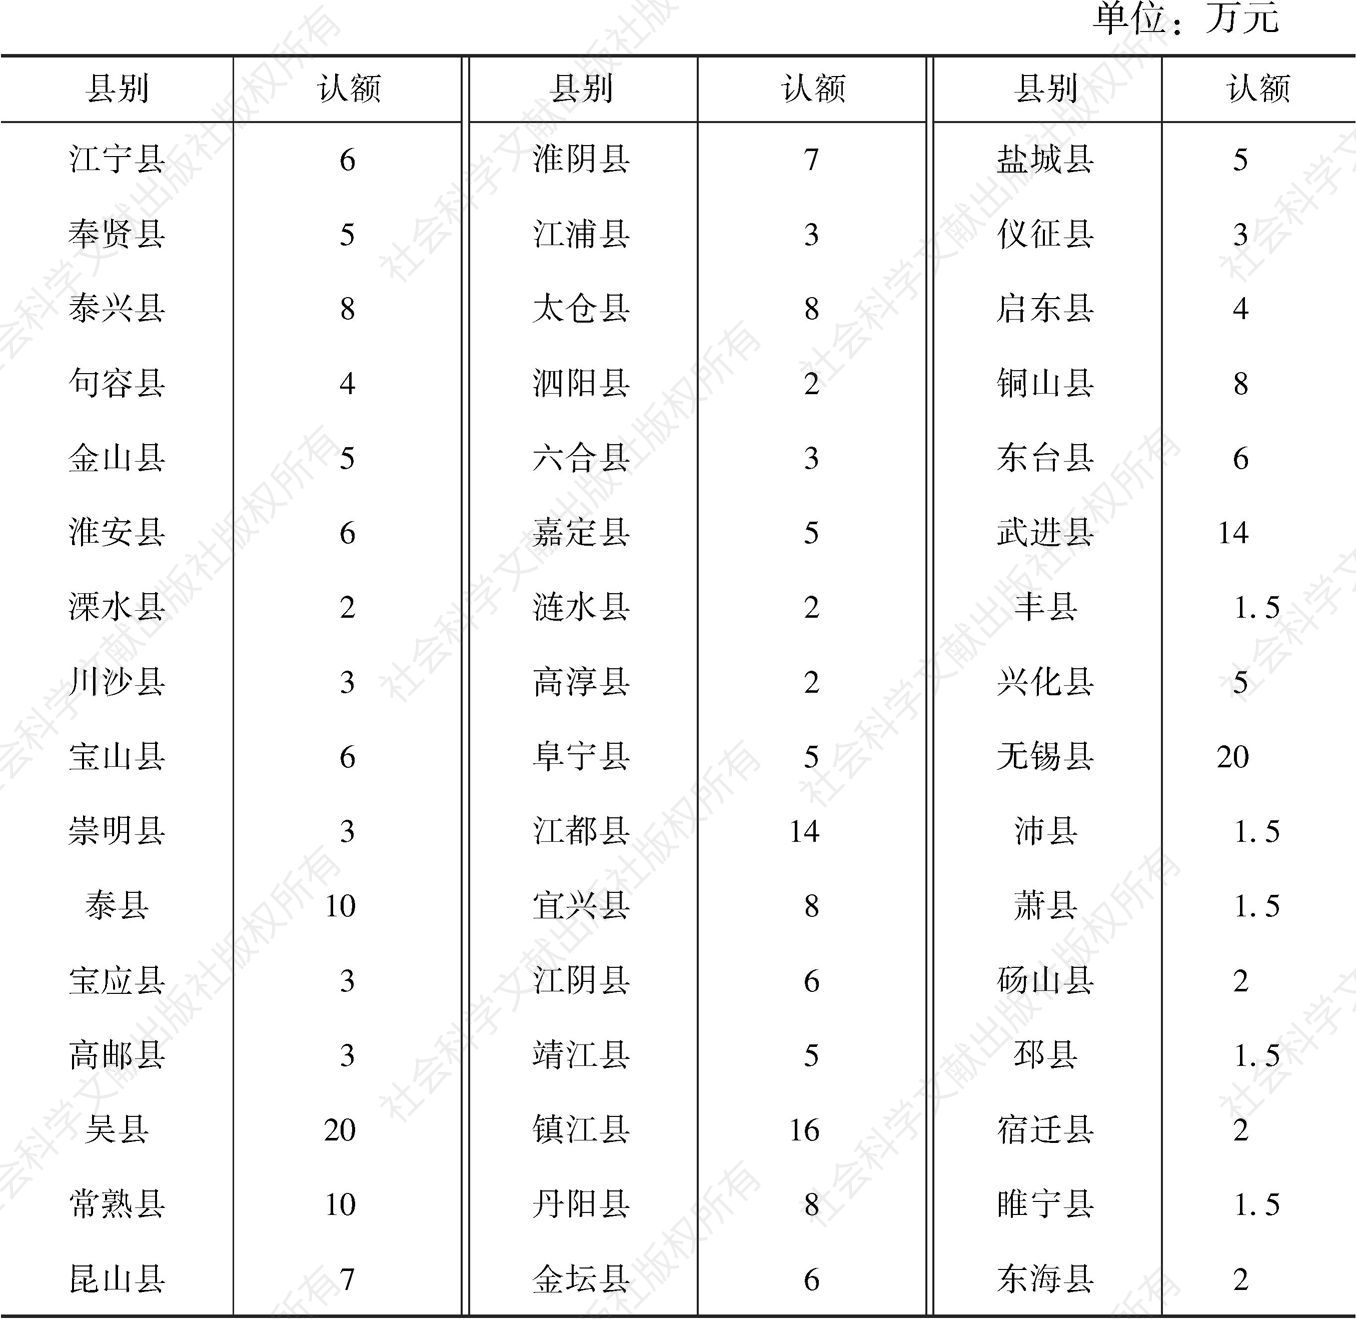 表2-2 江苏省各县营业税征收额